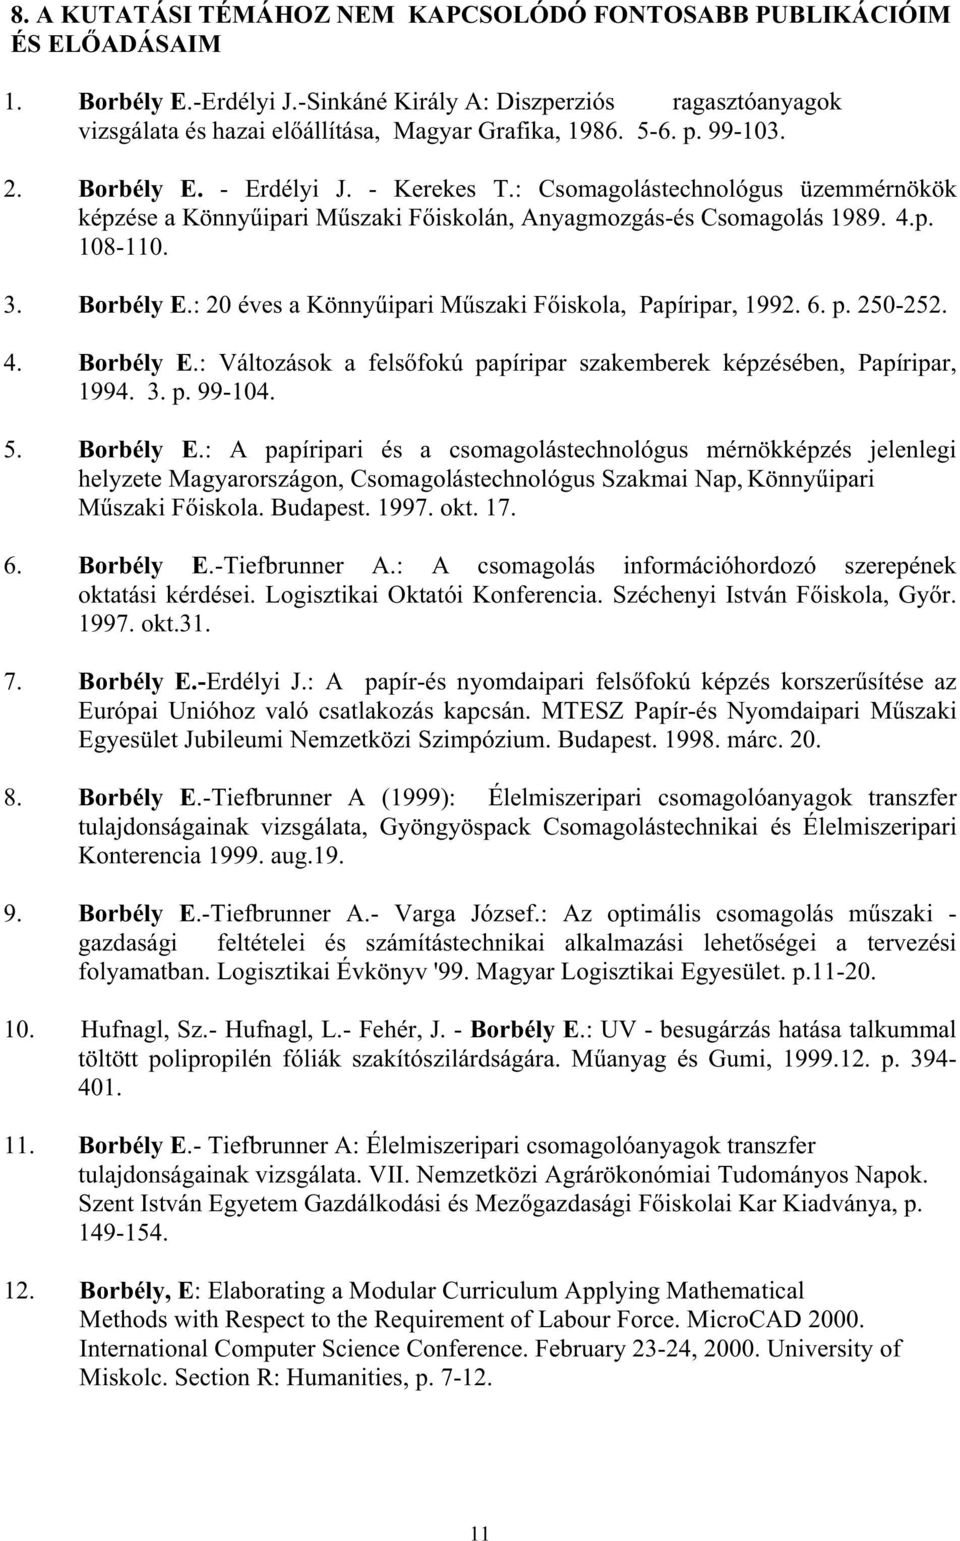 6. p. 250-252. 4. Borbély E.: Változások a fels fokú papíripar szakemberek képzésében, Papíripar, 1994. 3. p. 99-104. 5. Borbély E.: A papíripari és a csomagolástechnológus mérnökképzés jelenlegi helyzete Magyarországon, Csomagolástechnológus Szakmai Nap, Könny ipari M szaki F iskola.